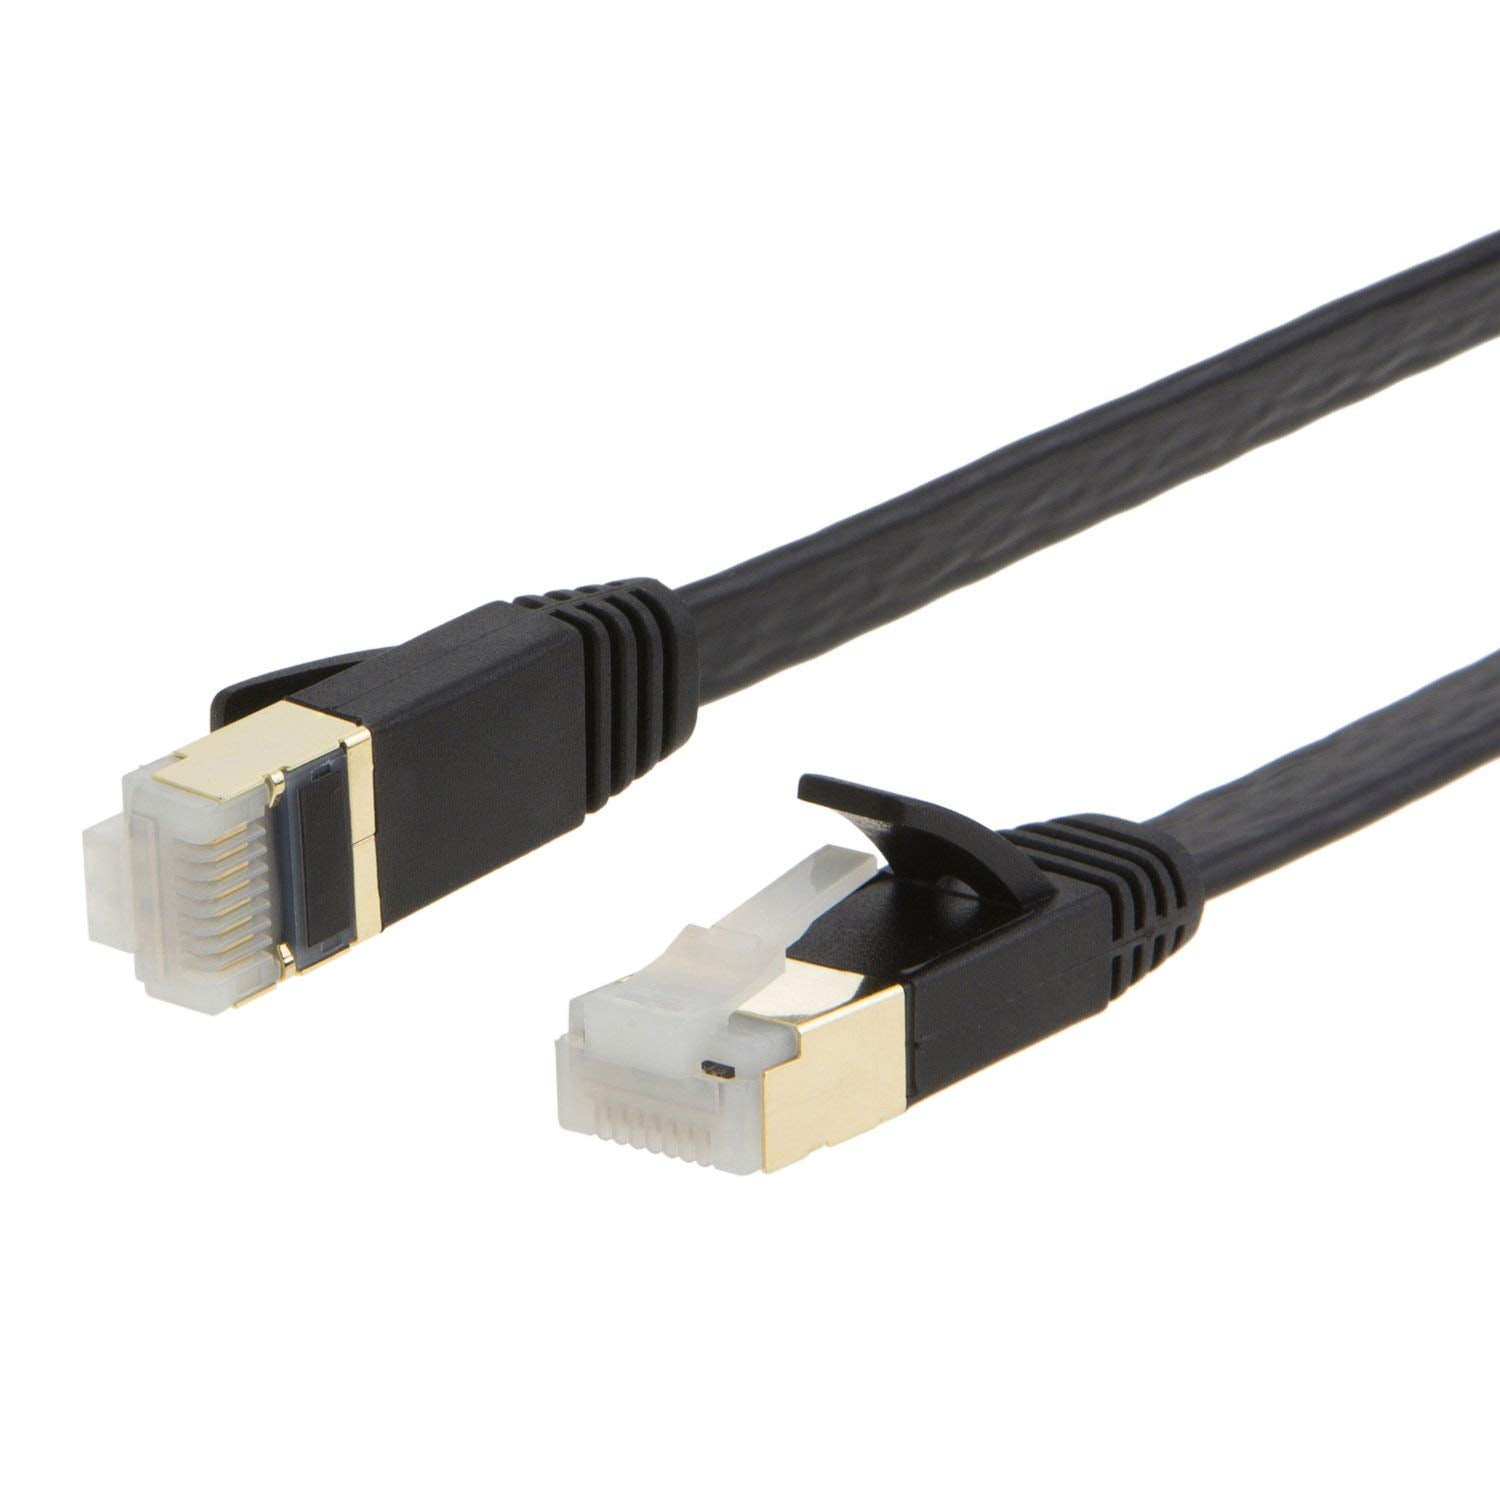 Sky 1m-15m Premium Câble Ethernet Cat6 Unbooted Routeur XBOX PS3 PS4 HD Lot 